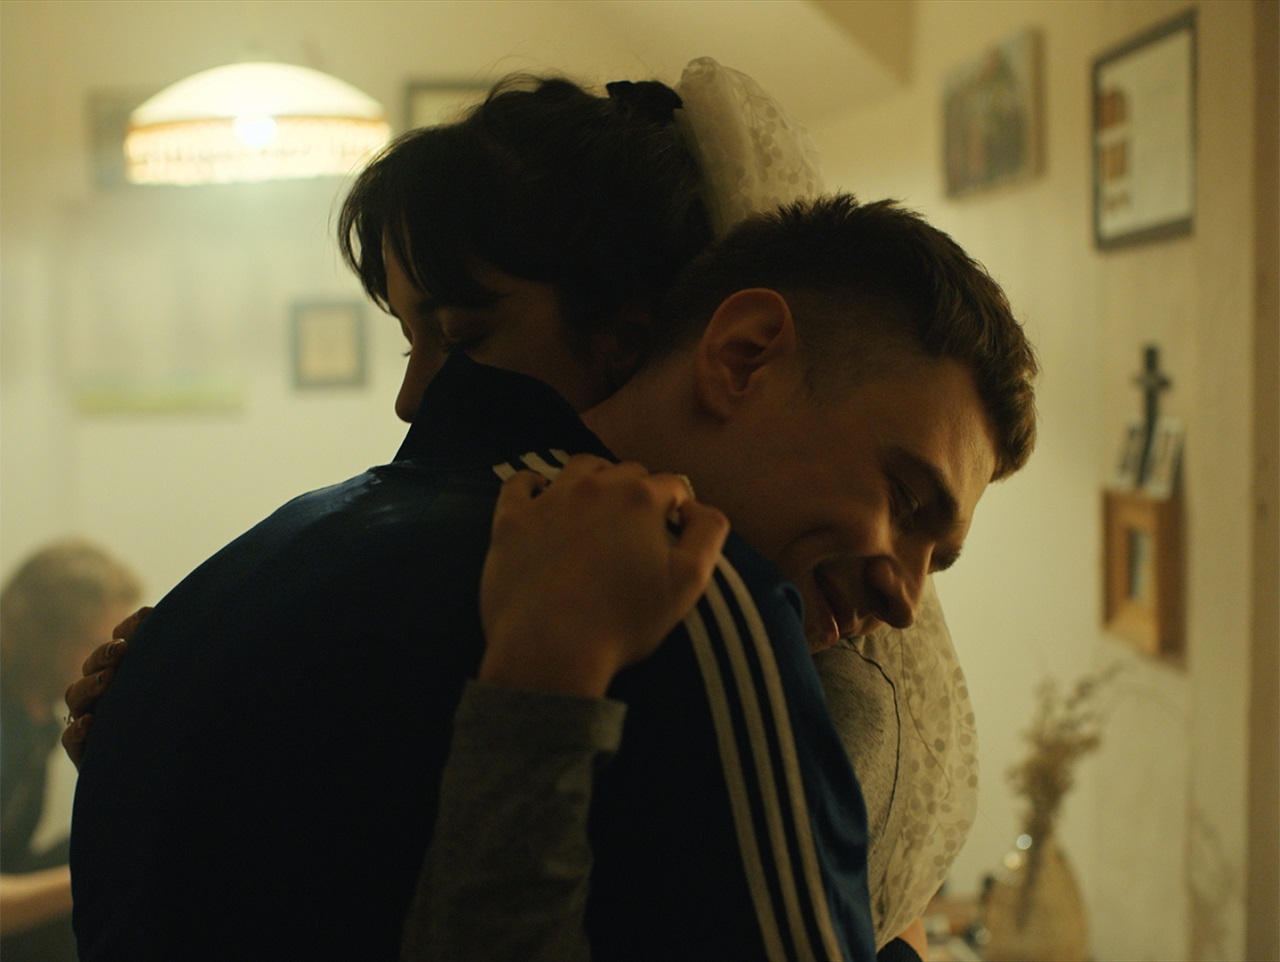 Zwei Menschen umarmen einander innig. Szene aus dem Kurzfilm "In Joy" von Maryna Roshchyna.